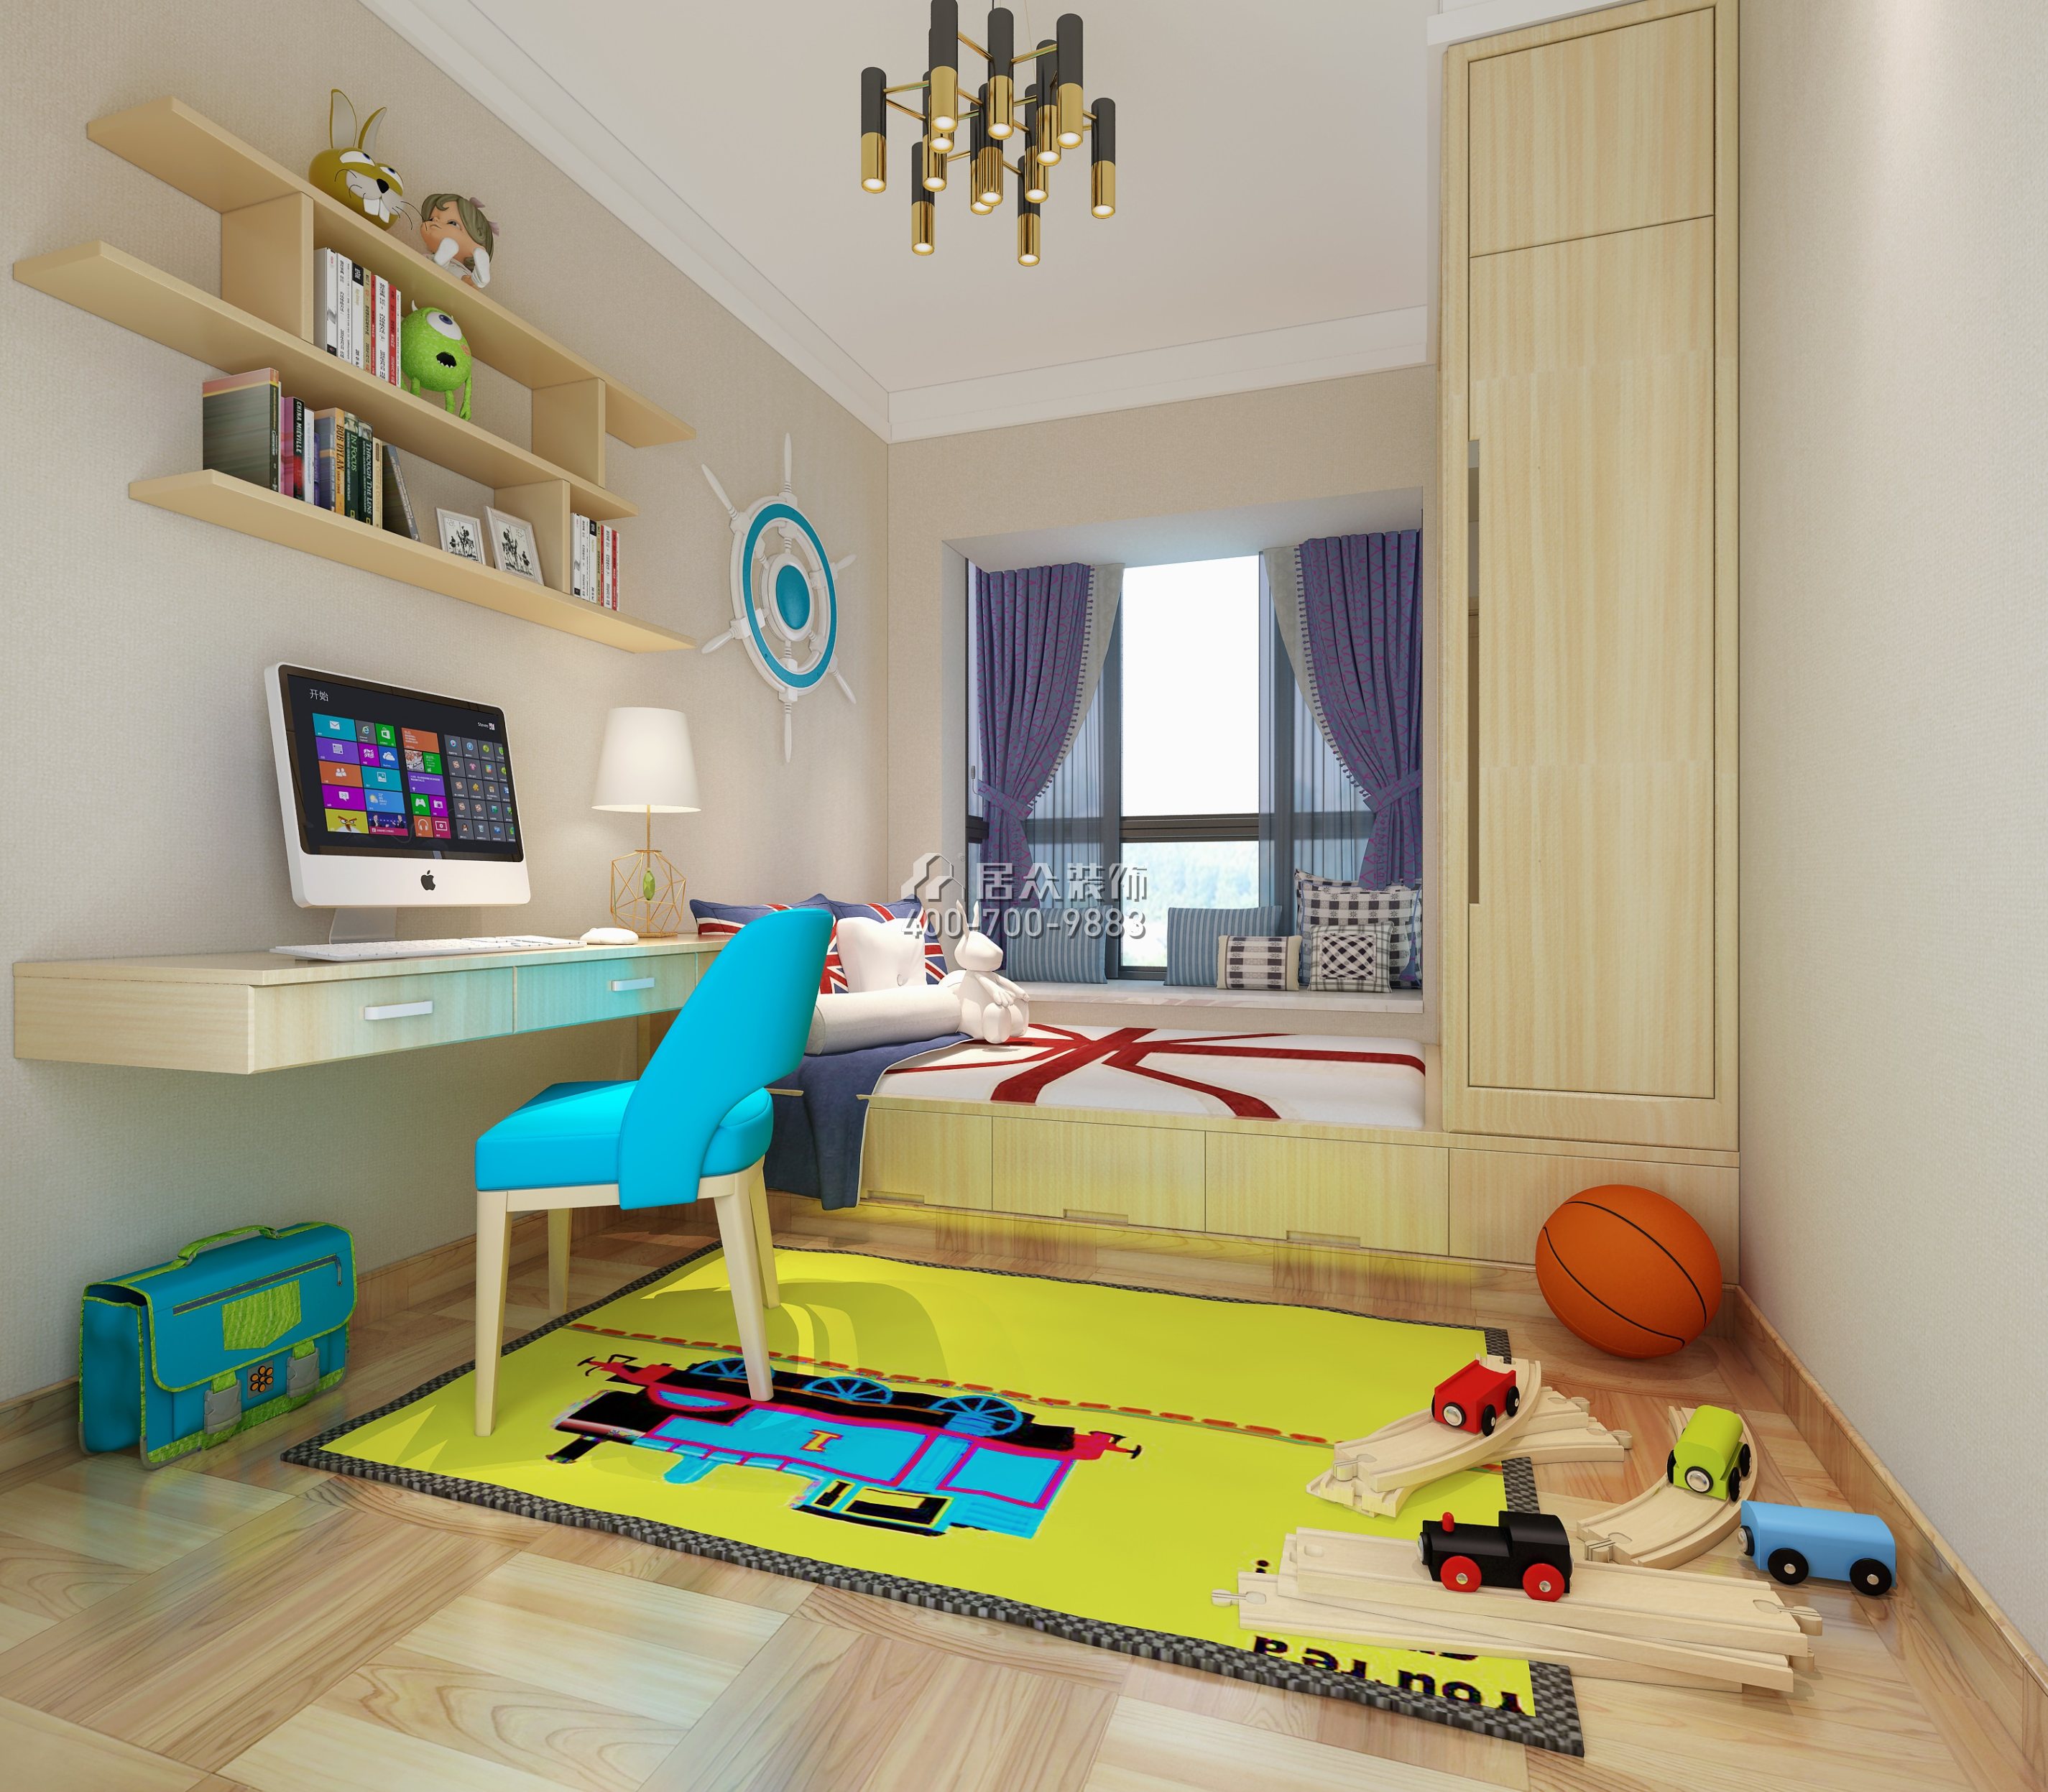 金域中央260平方米北欧风格复式户型儿童房装修效果图